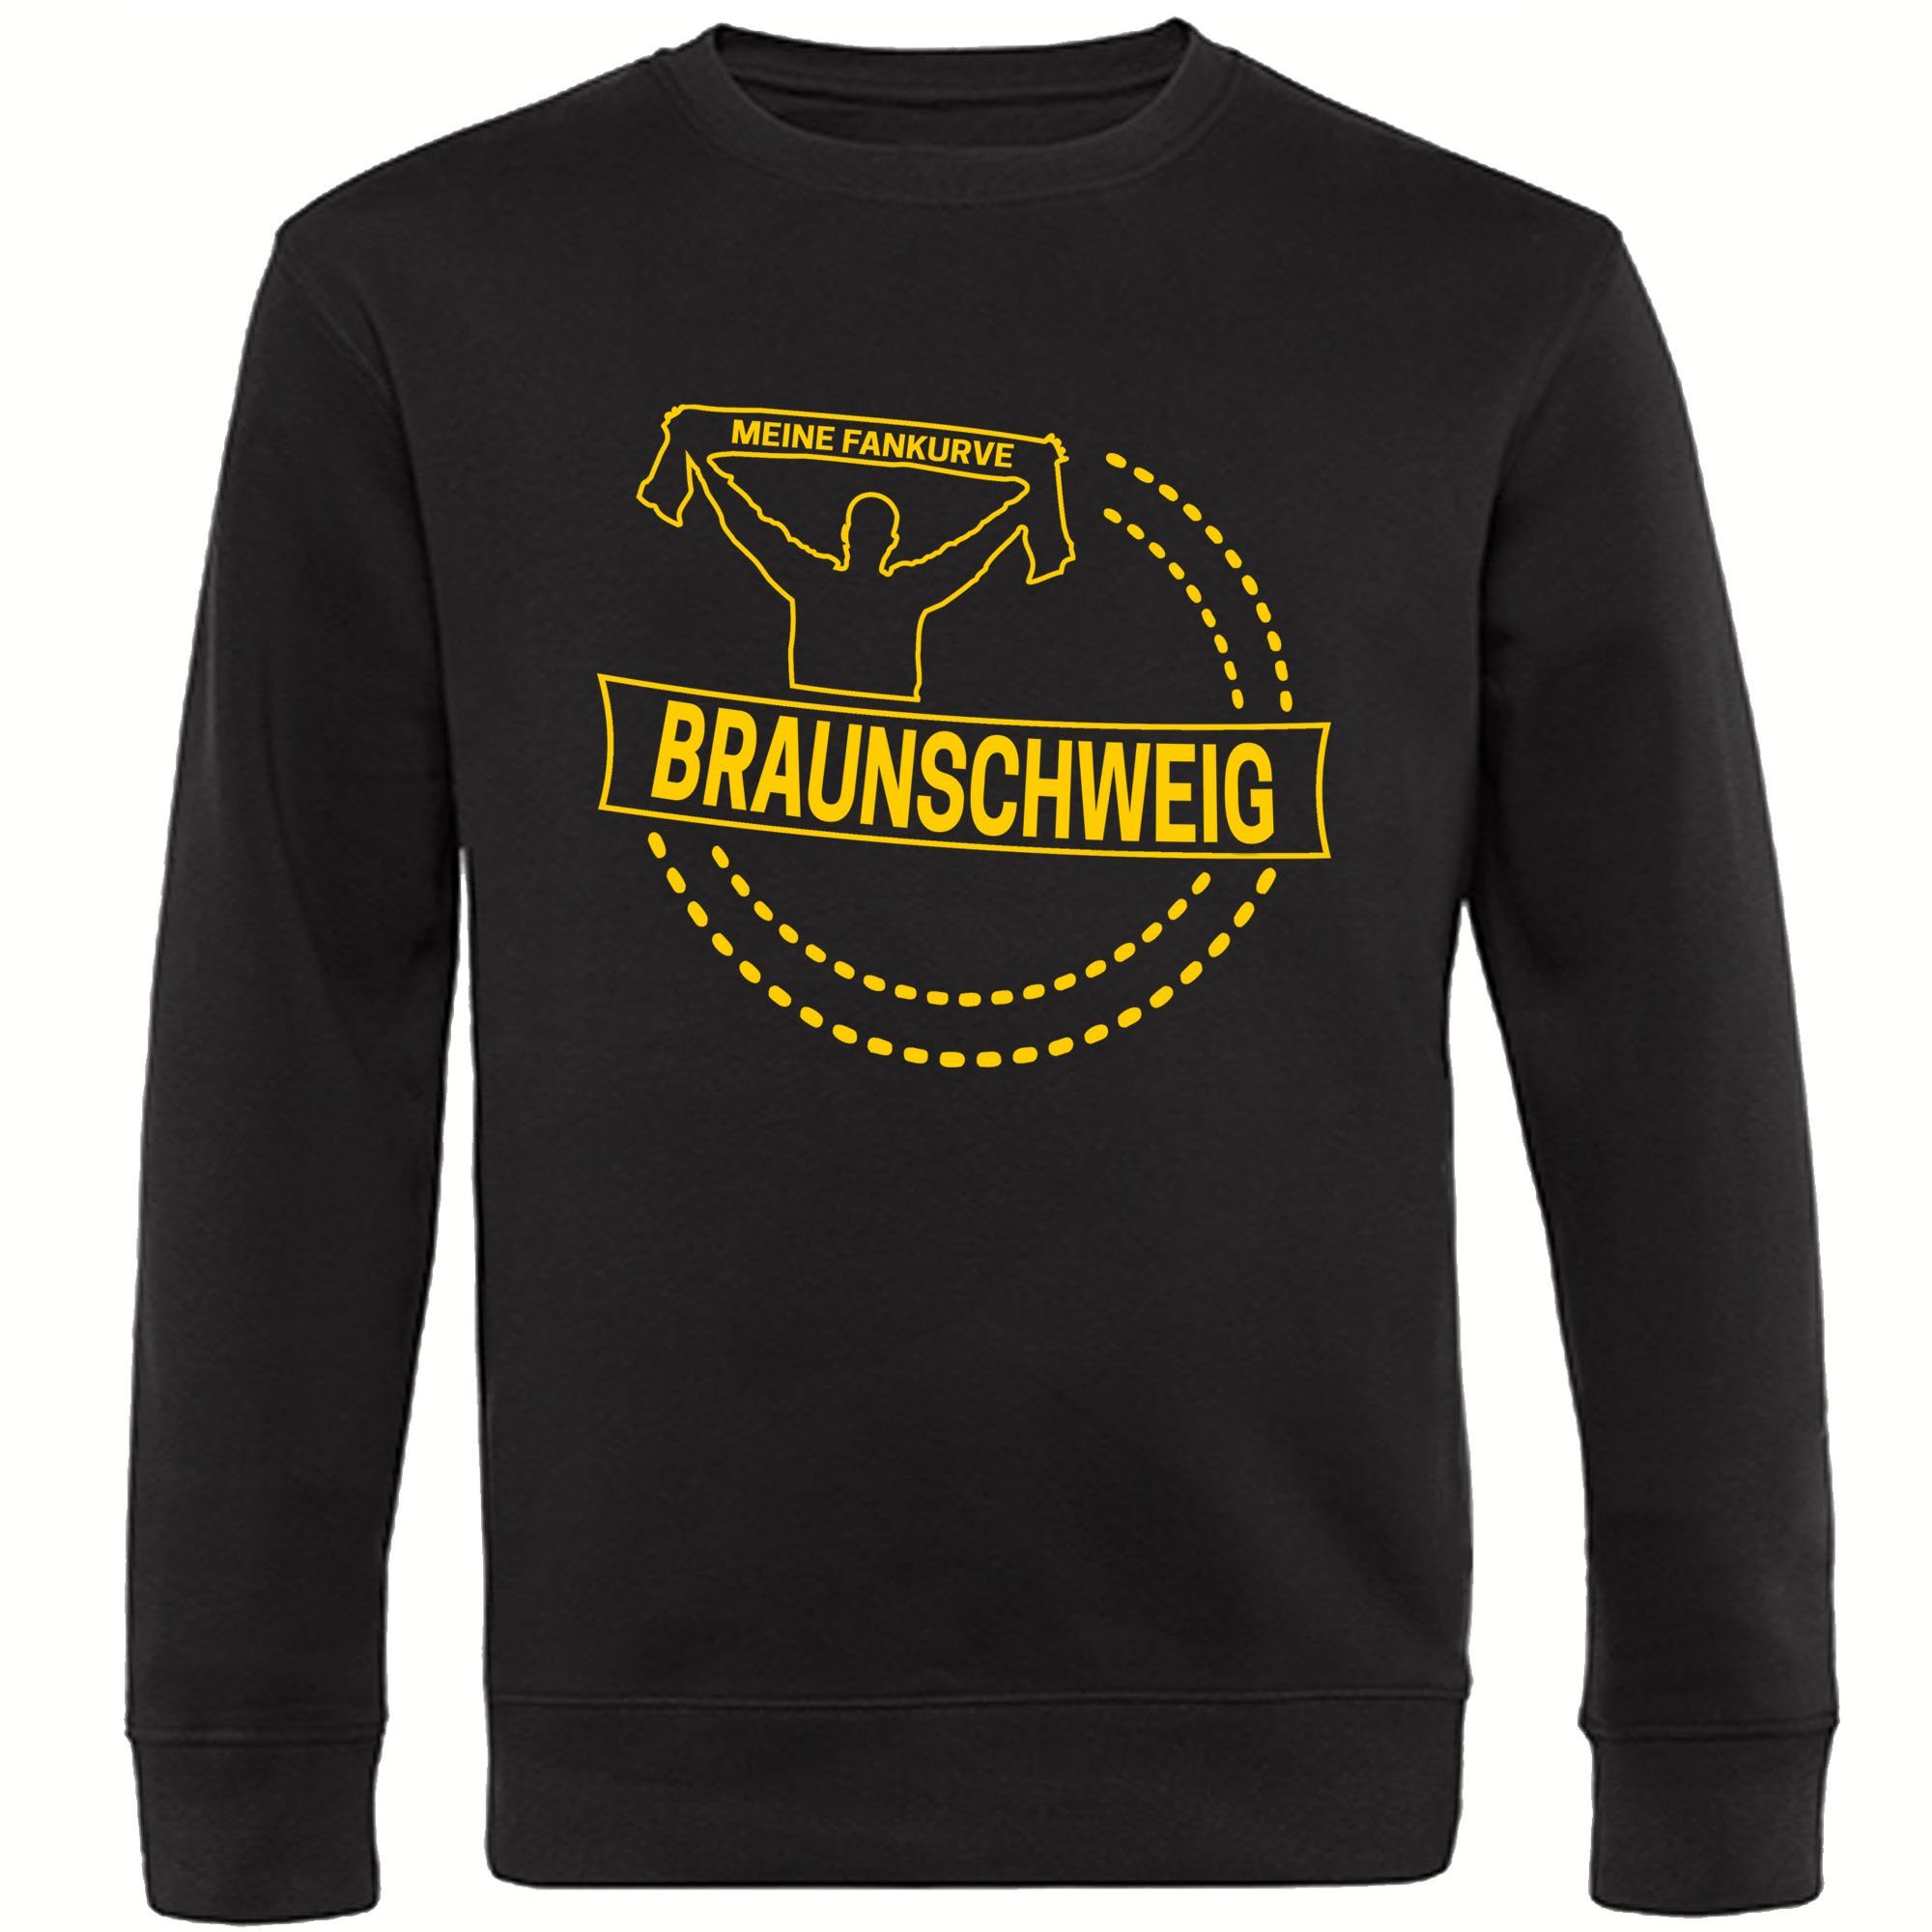 multifanshop Sweatshirt Braunschweig - Meine Fankurve - Pullover